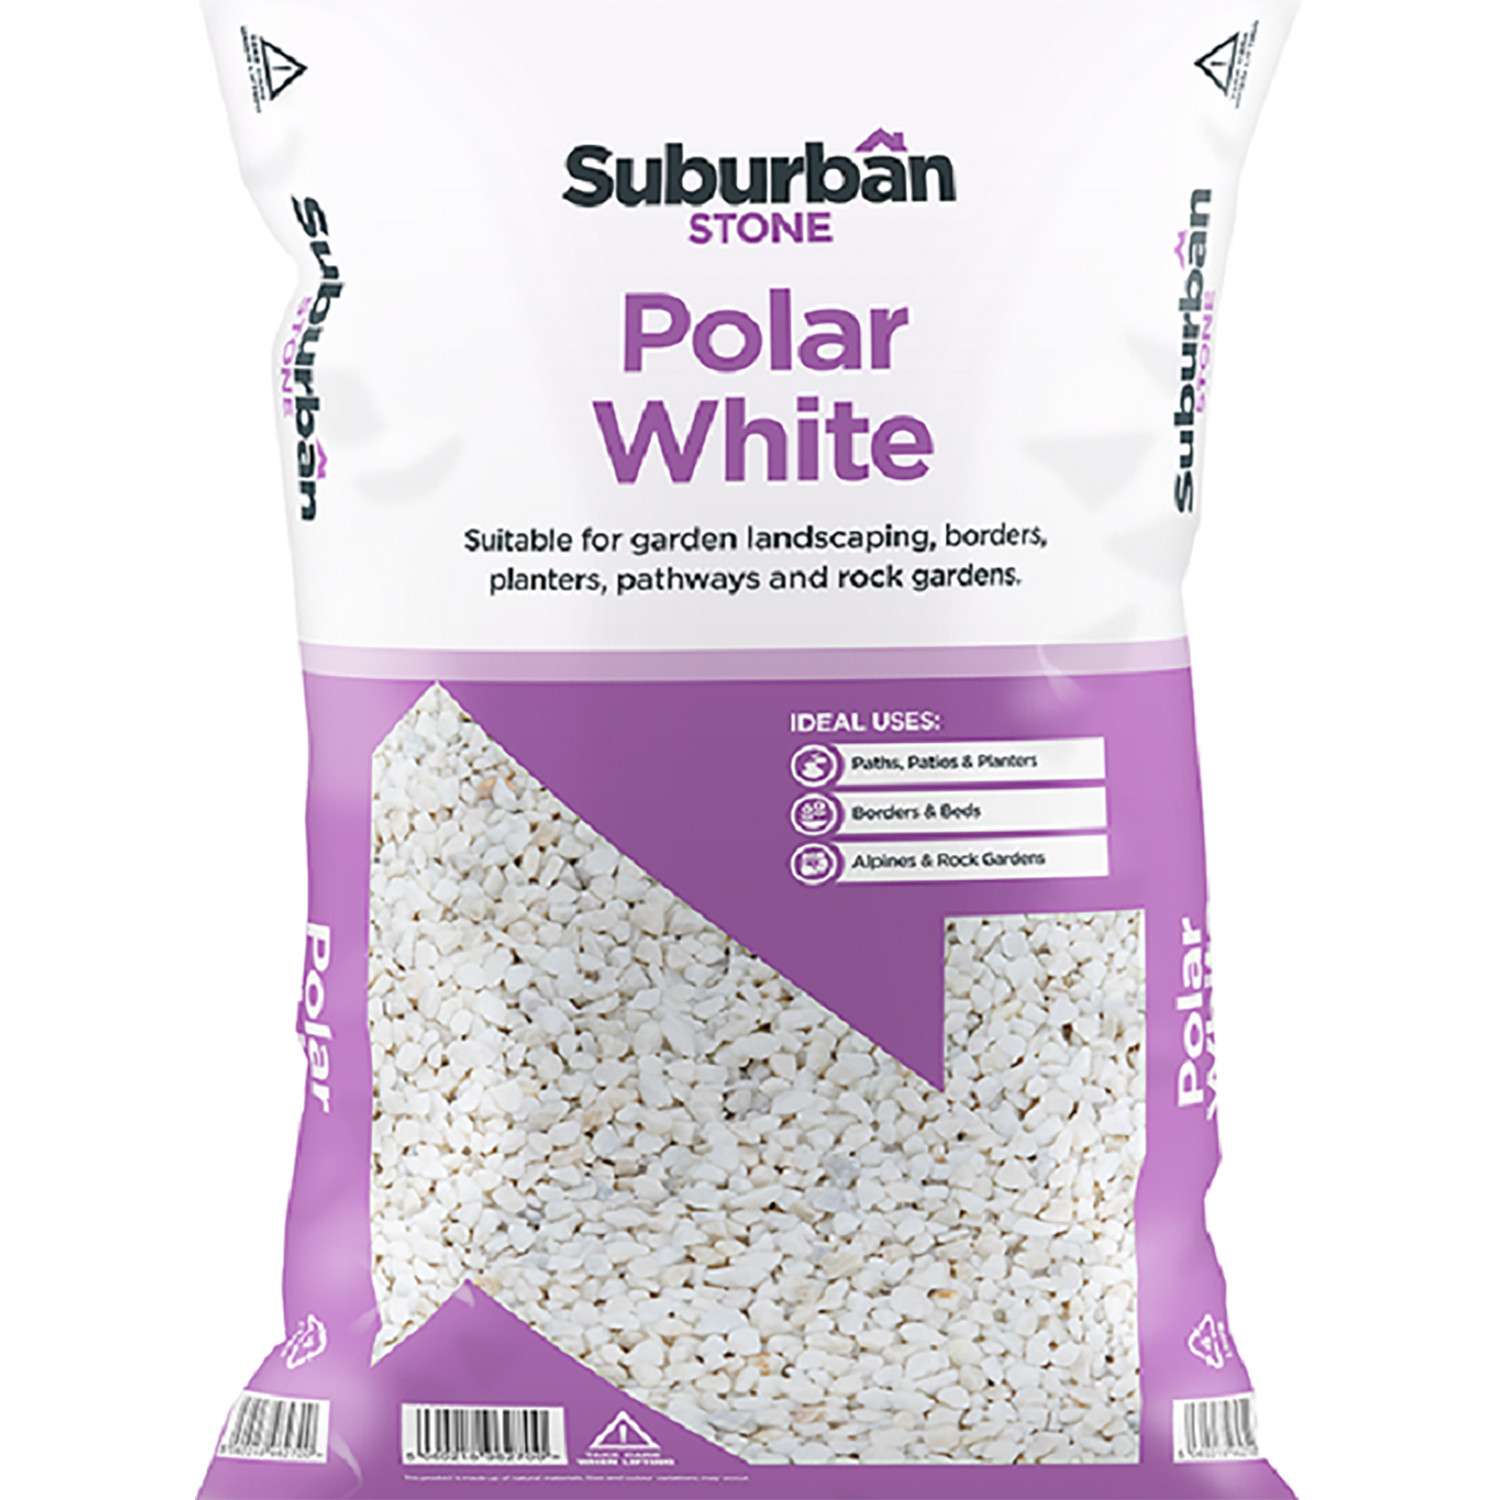 Suburban Stone Polar White Chippings 20kg Image